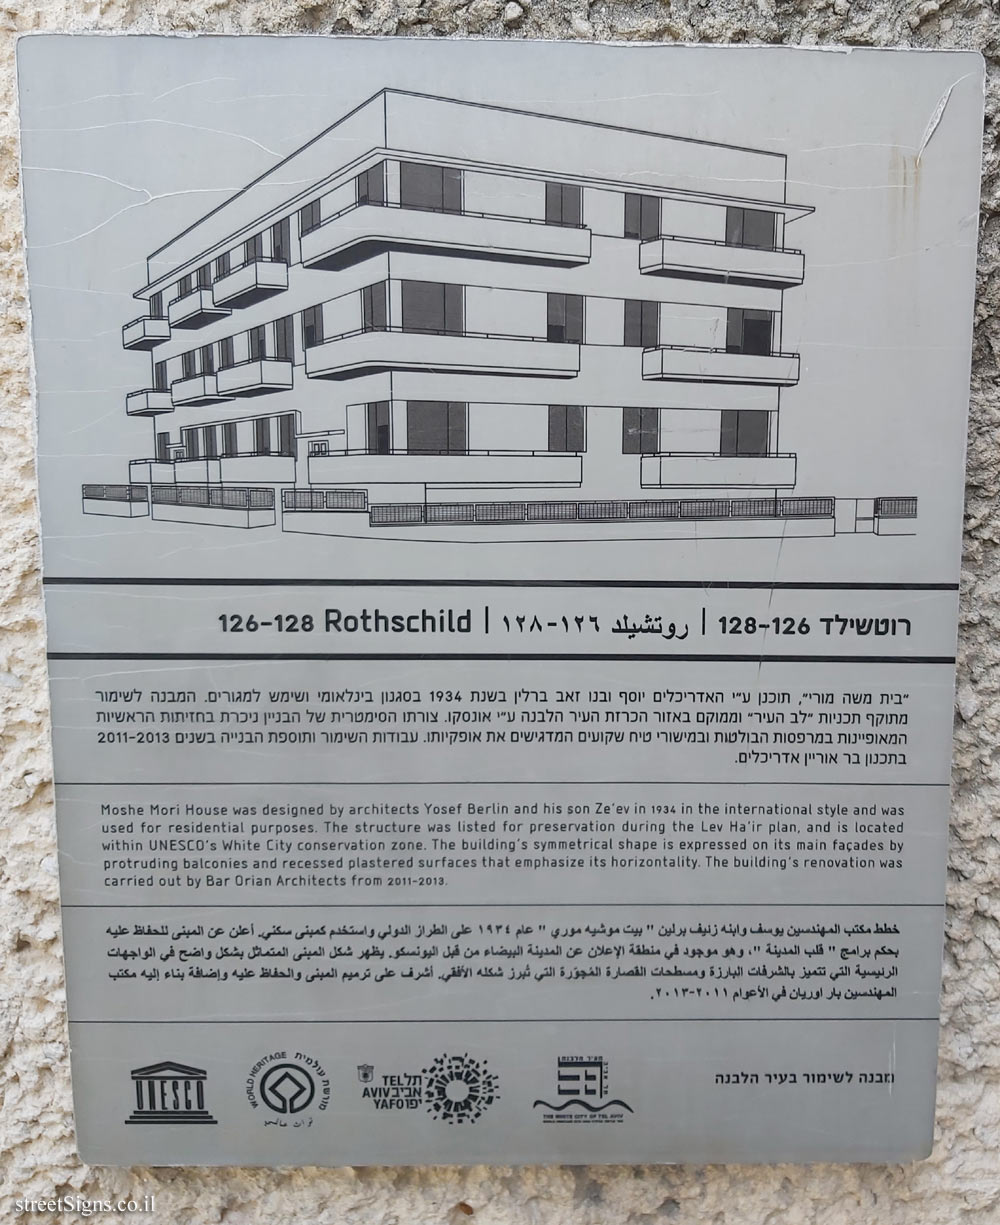 Tel Aviv - buildings for conservation - 126-128 Rothschild